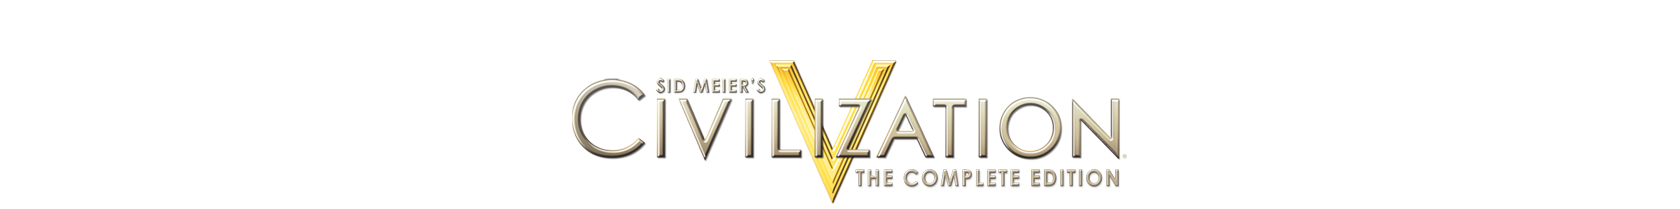 File:Civilization V logo.png